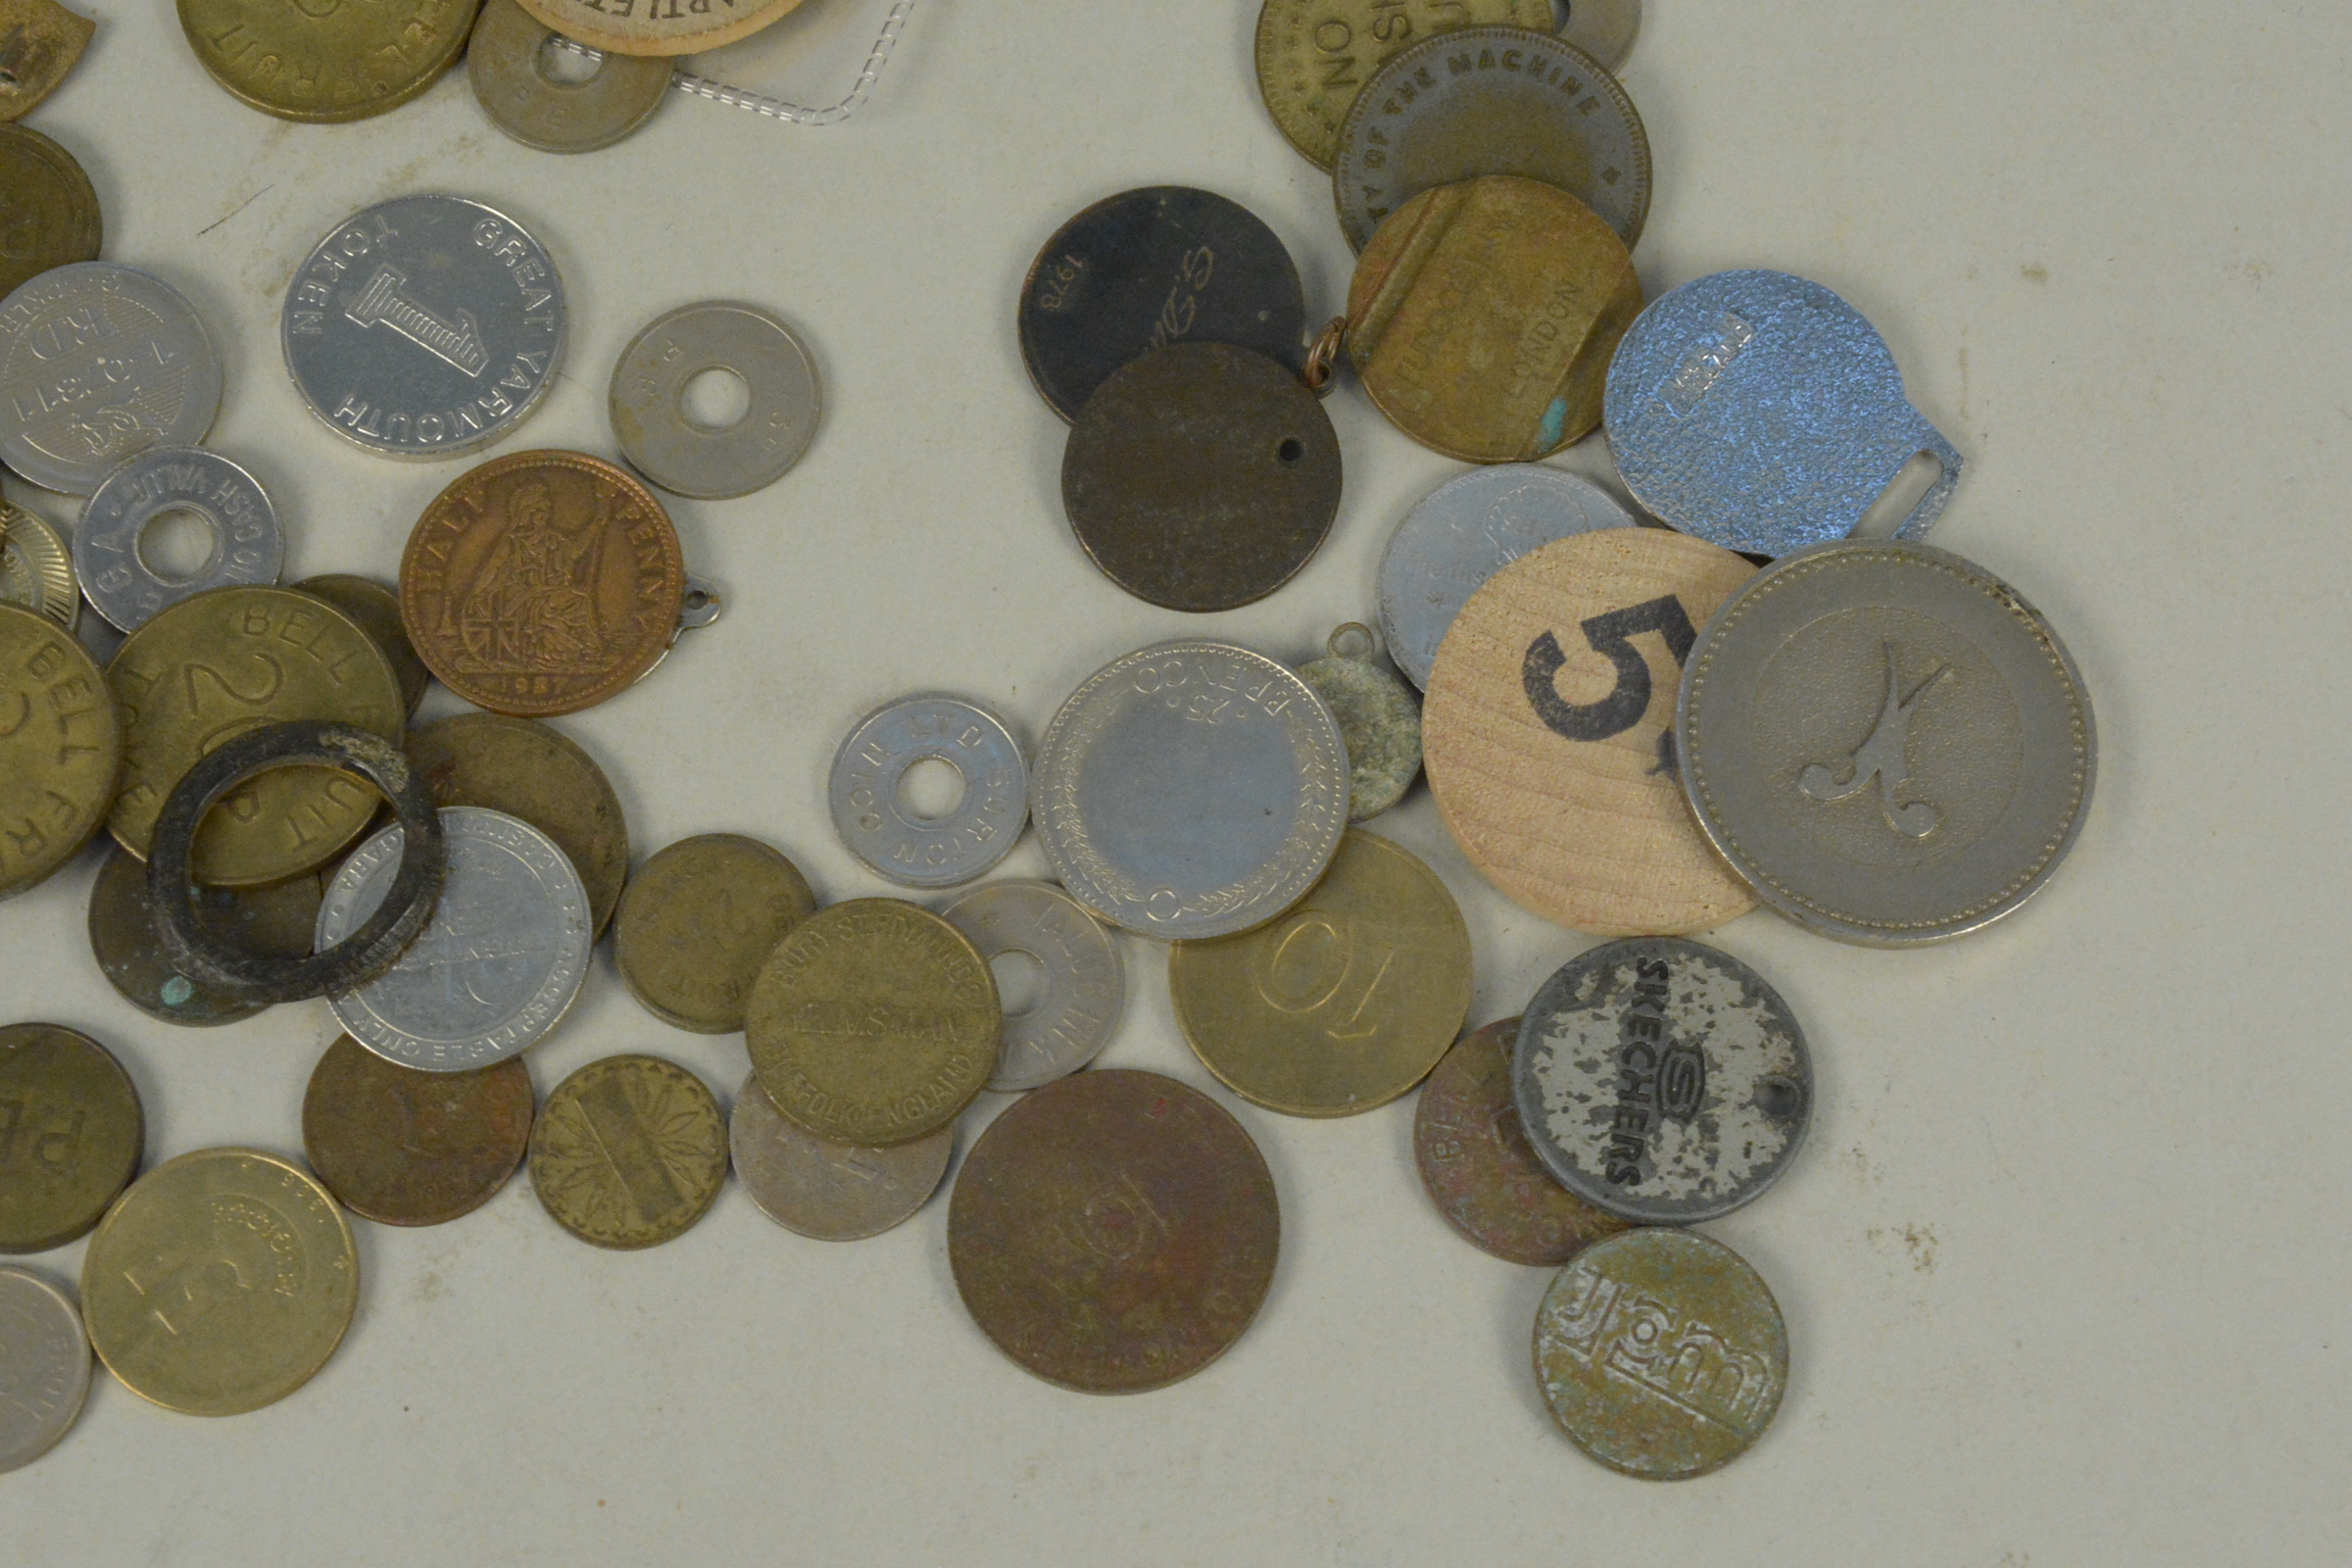 Various gaming and gambling tokens, life saving medallion, - Image 3 of 3